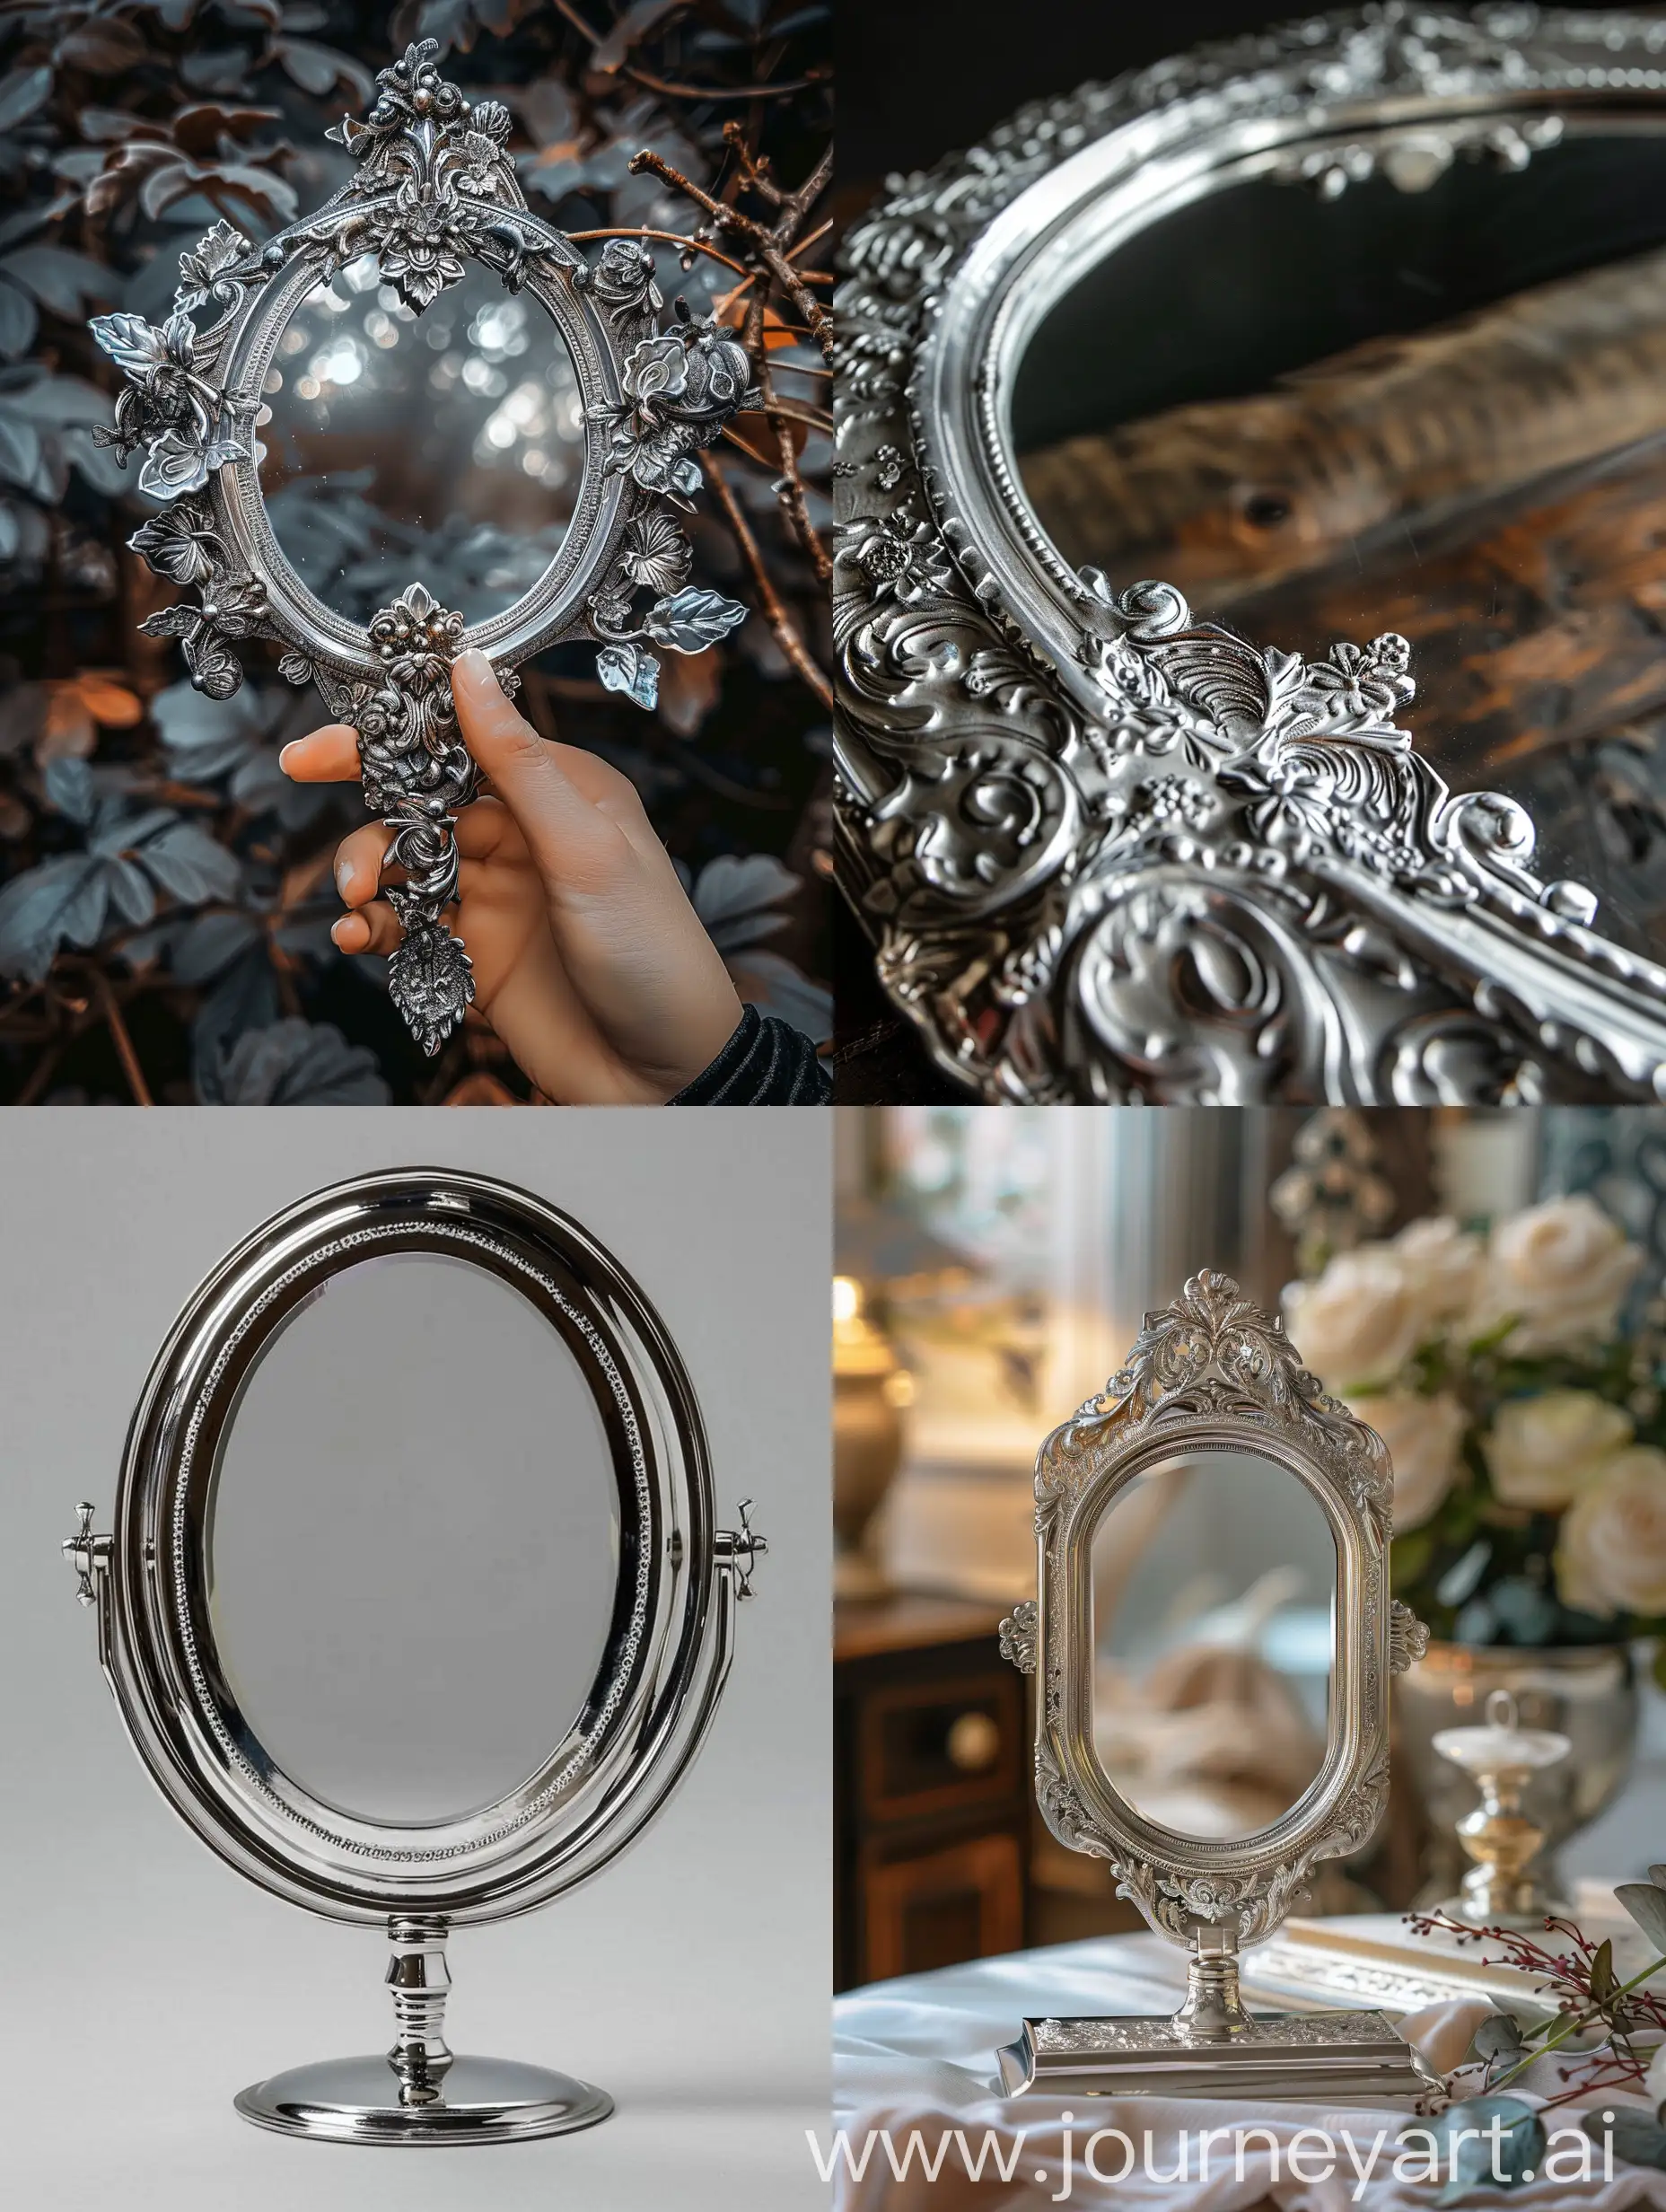 A magic silver mirror